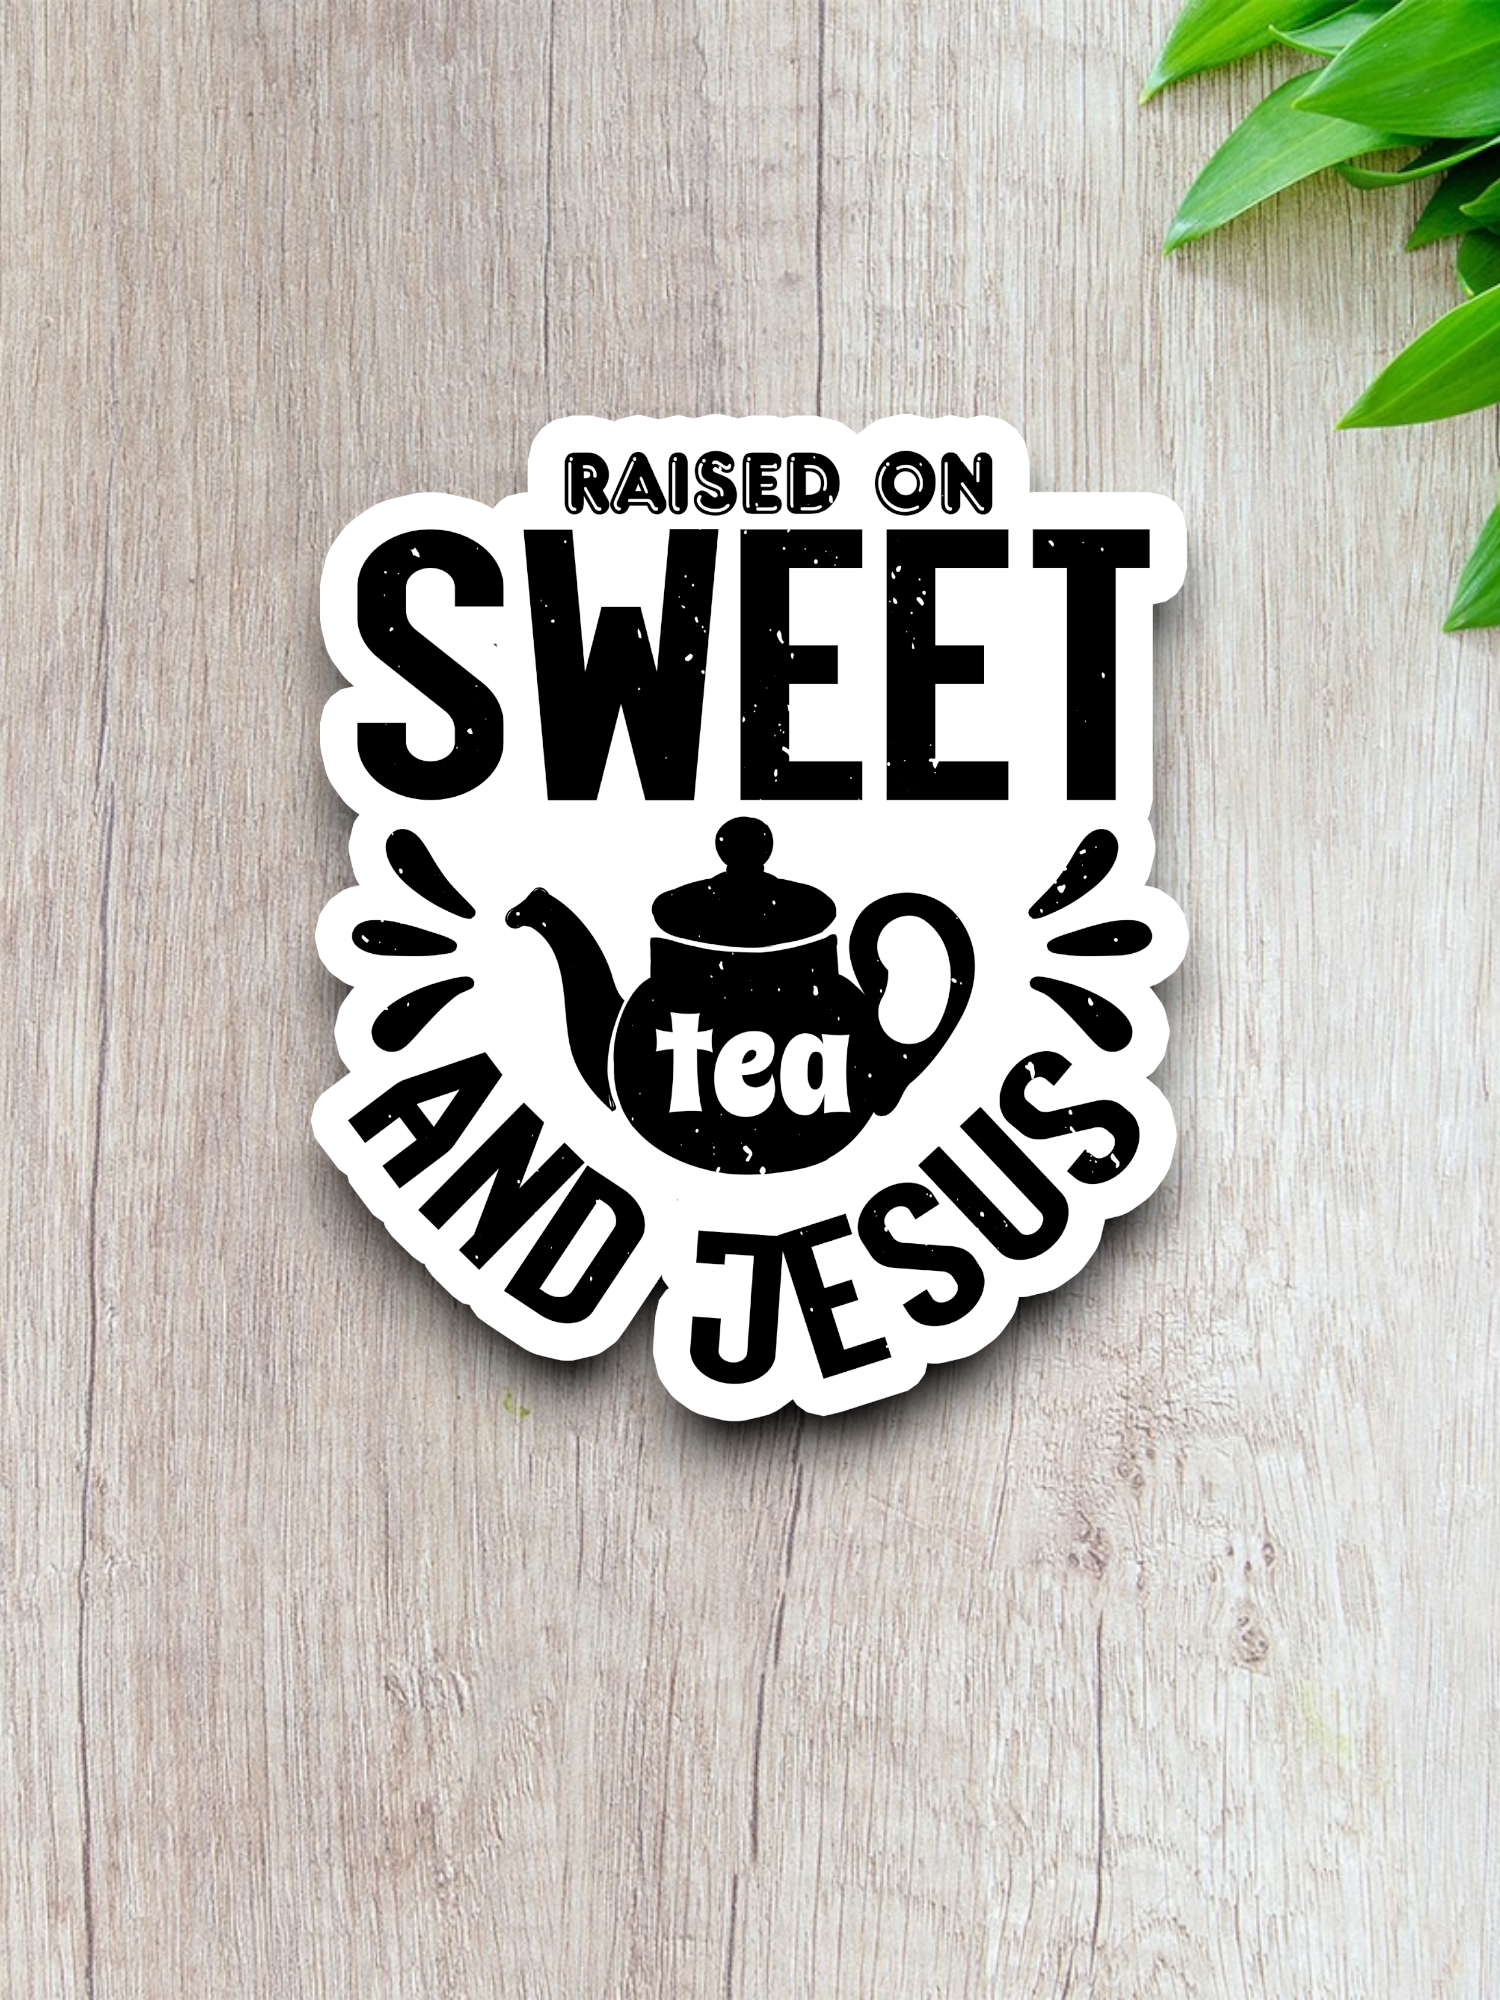 Raised On Sweet Tea And Jesus - Faith Sticker